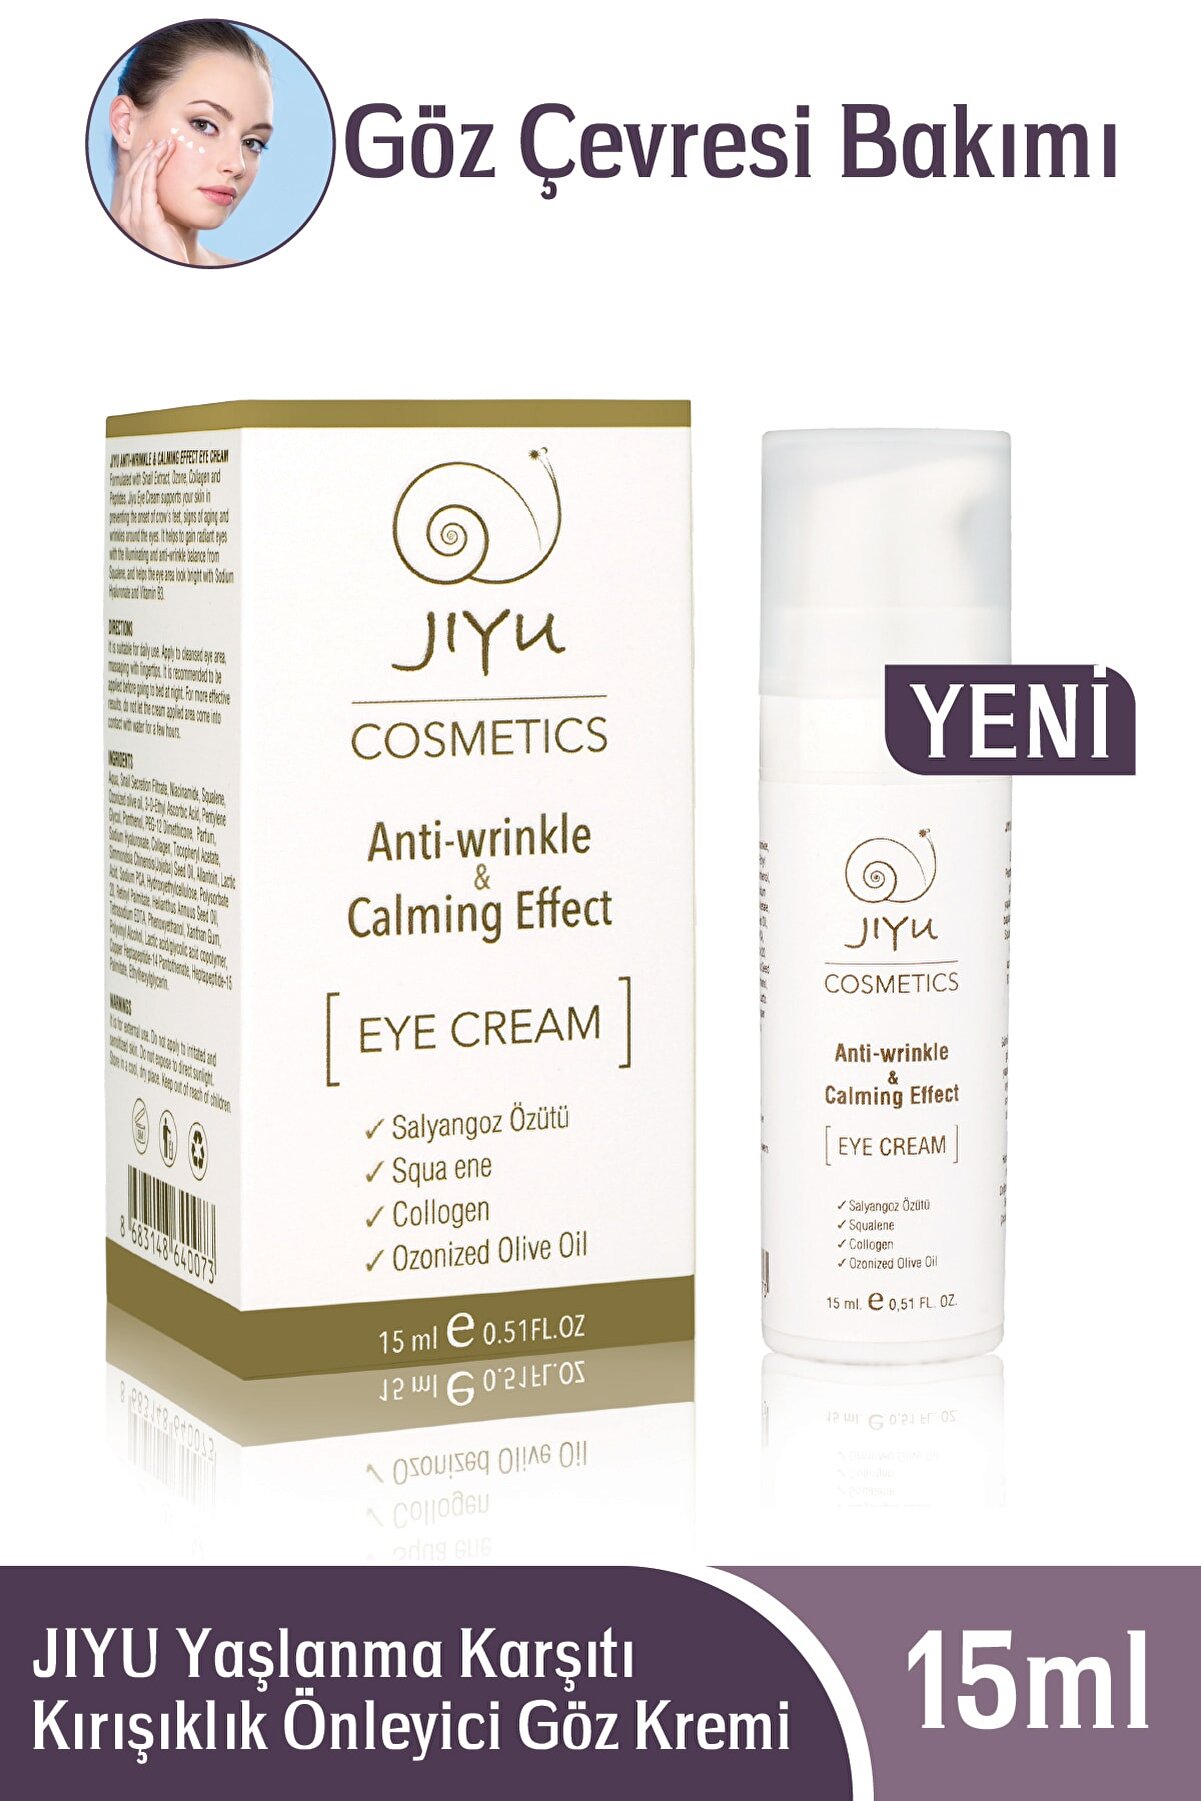 JIYU Anti-aging & Calming Effect Eye Cream Yaşlanma Karşıtı Kırışıklık Önleyici Göz Kremi 15 Ml.